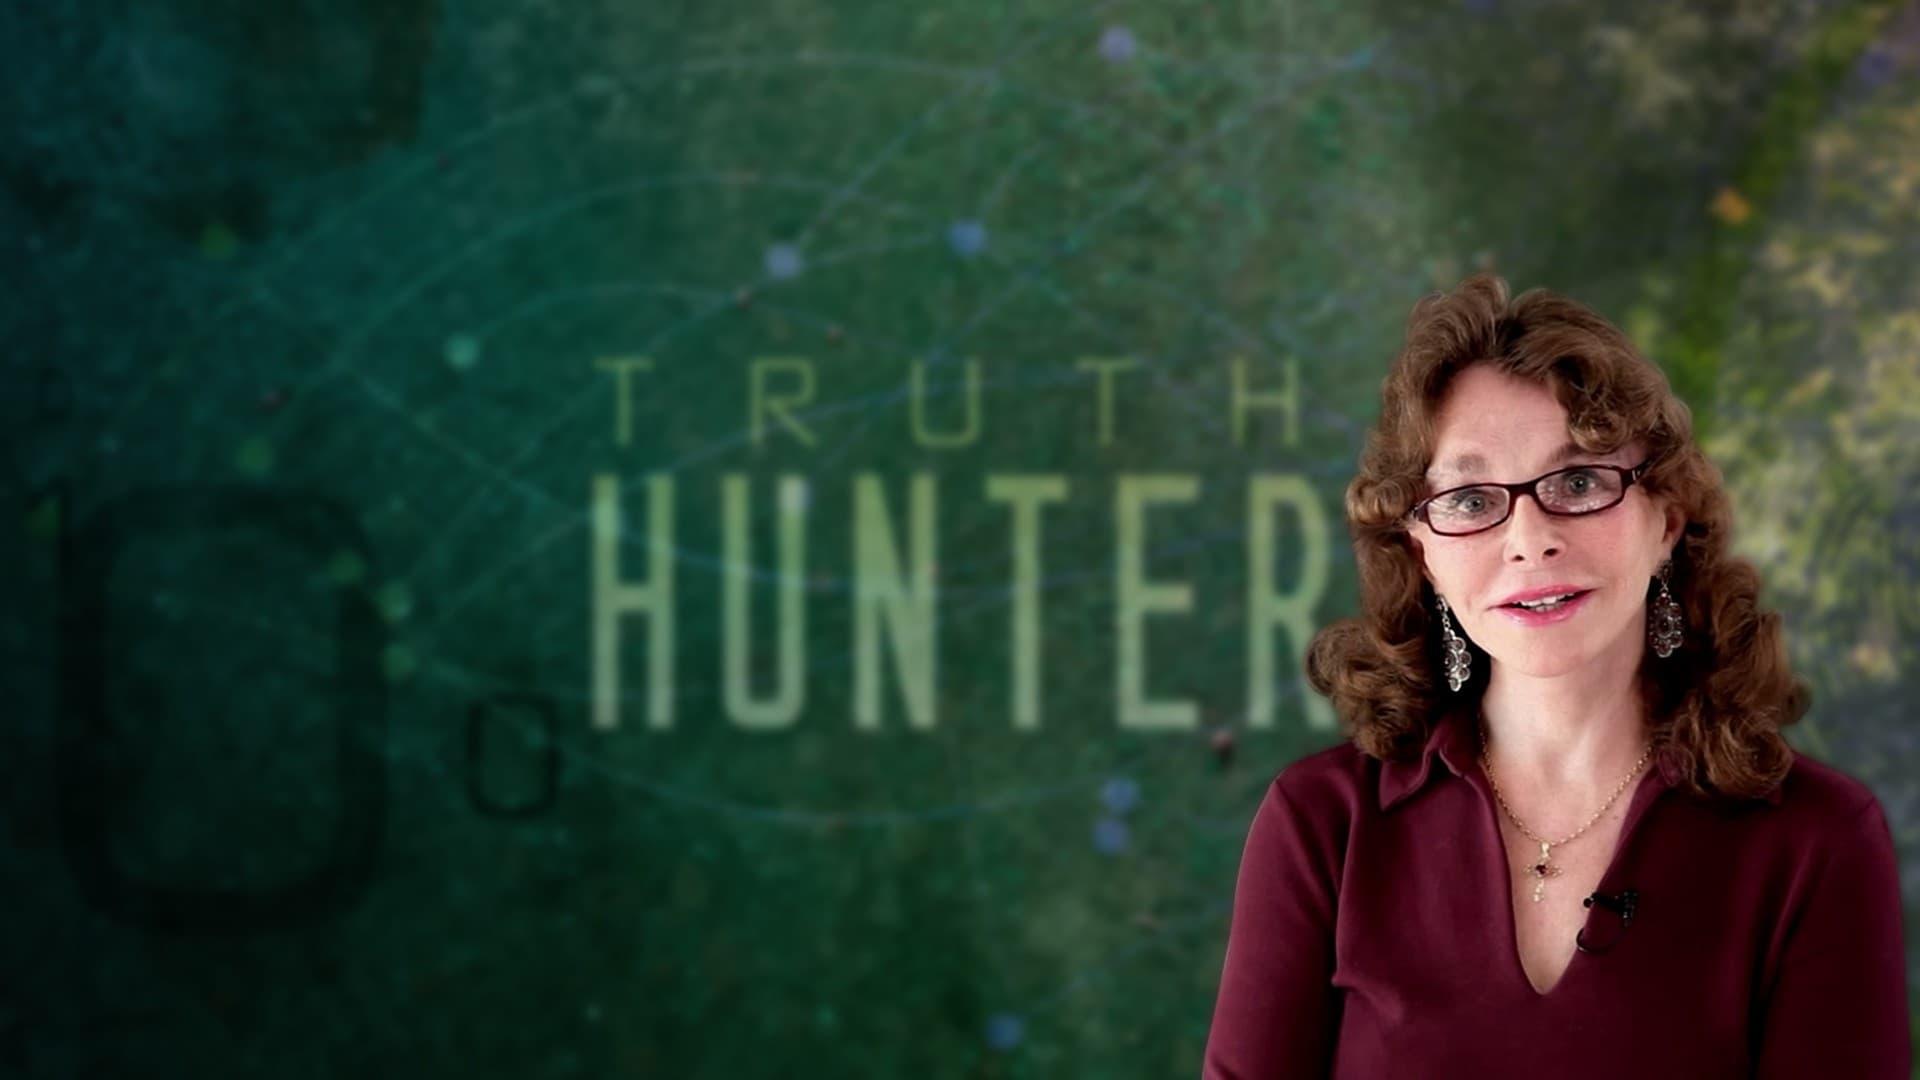 Truth Hunter backdrop